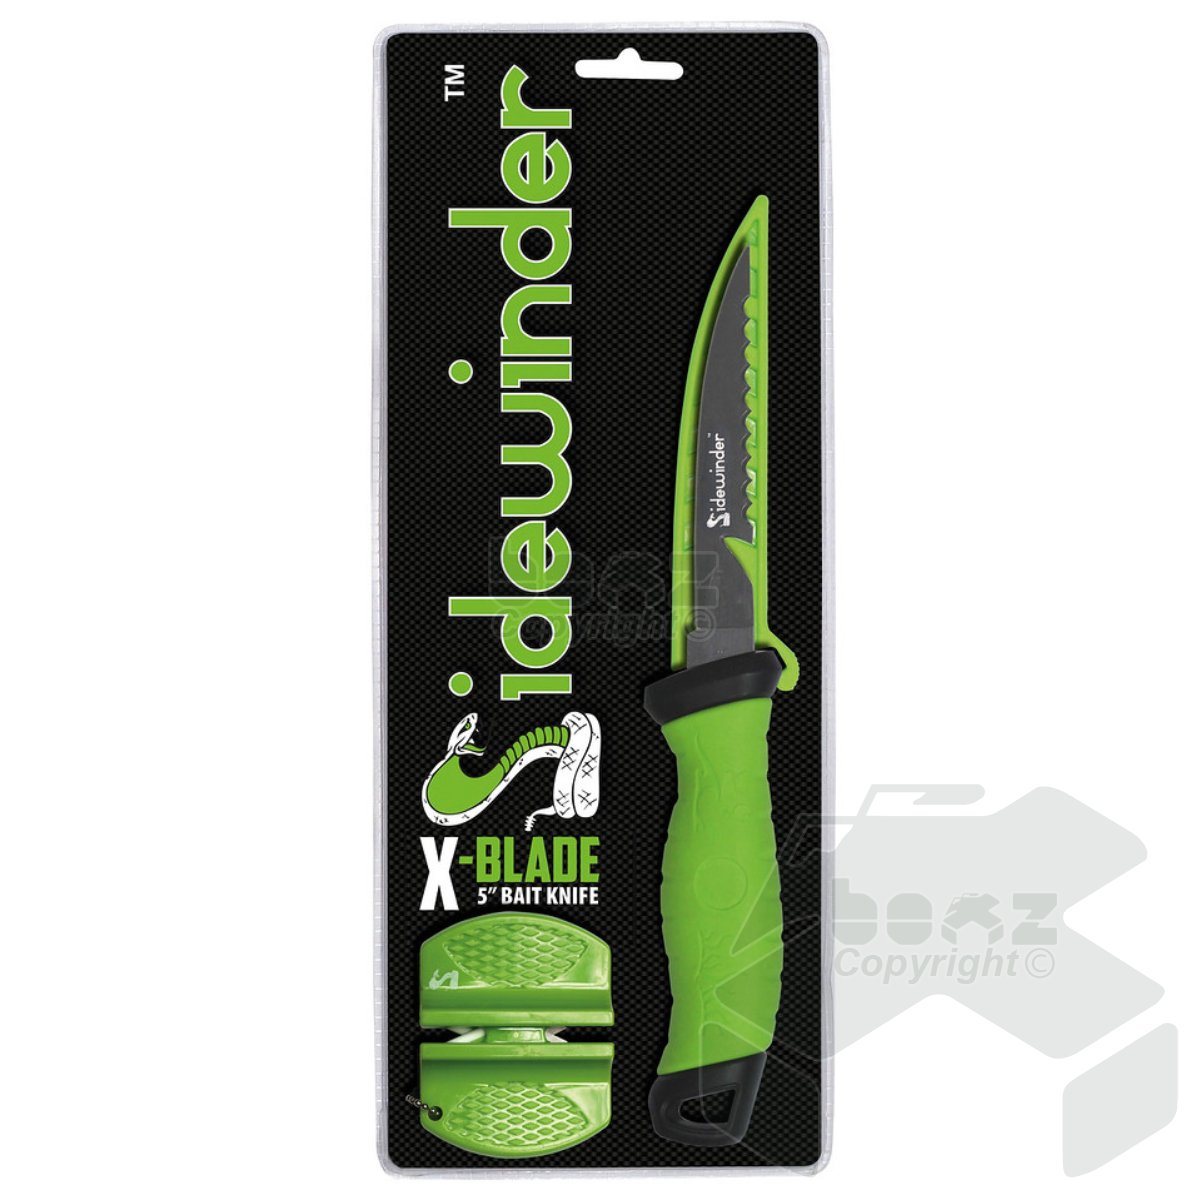 Sidewinder X-Blade 5" Bait Knife